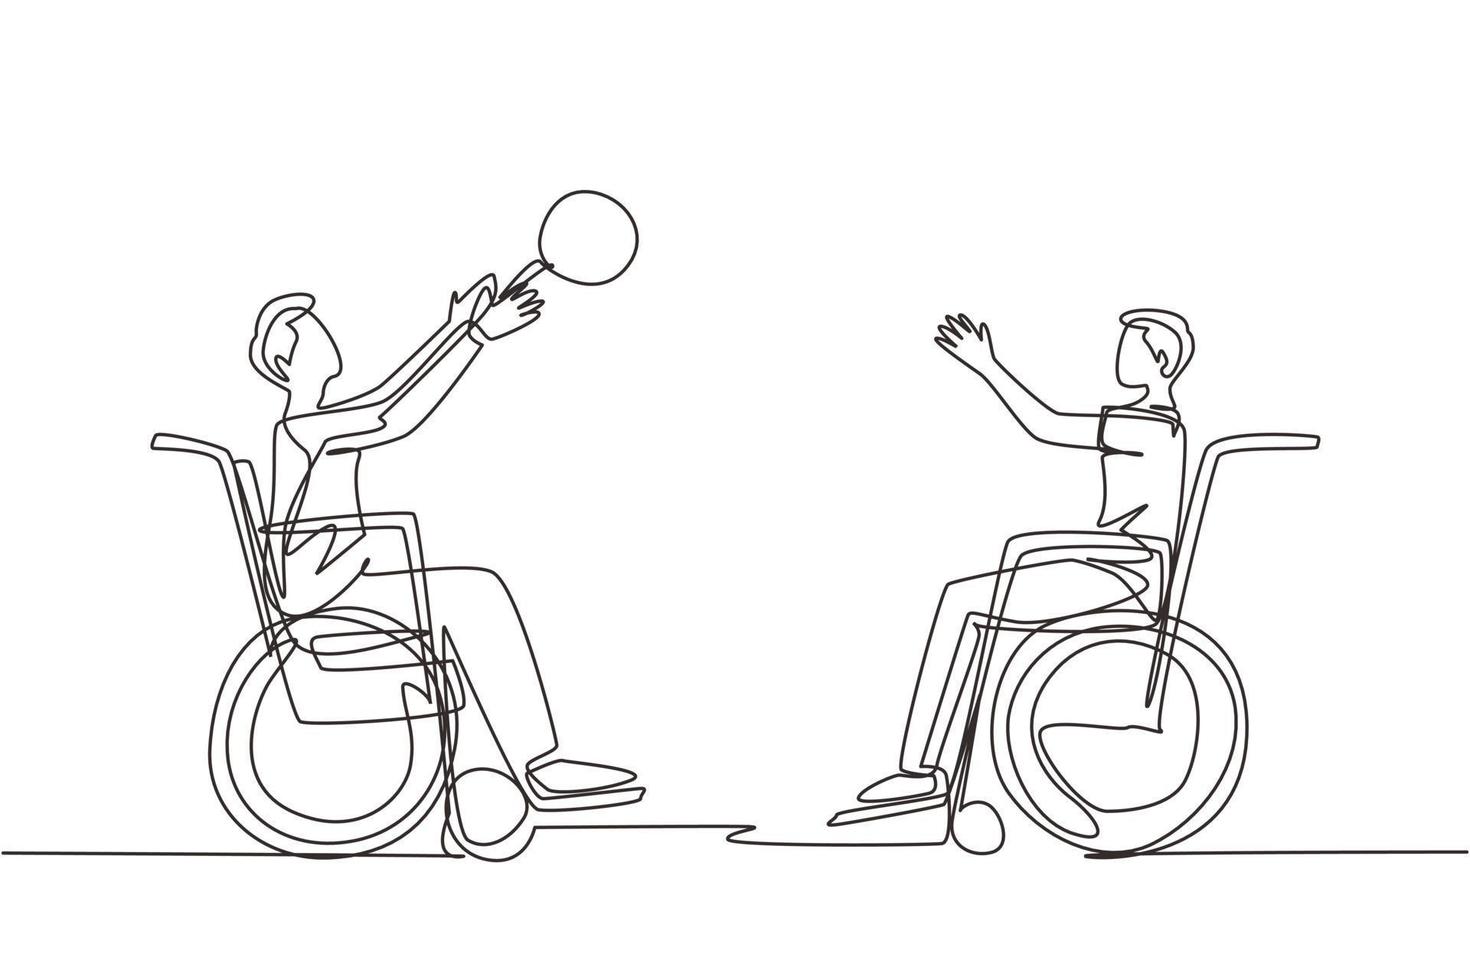 einzelne durchgehende Strichzeichnung fröhlicher behinderter junger Mann im Rollstuhl, der Basketball spielt. Konzept des adaptiven Sports für behinderte Menschen. dynamische einzeilige abgehobene betragsgrafikdesign-vektorillustration vektor